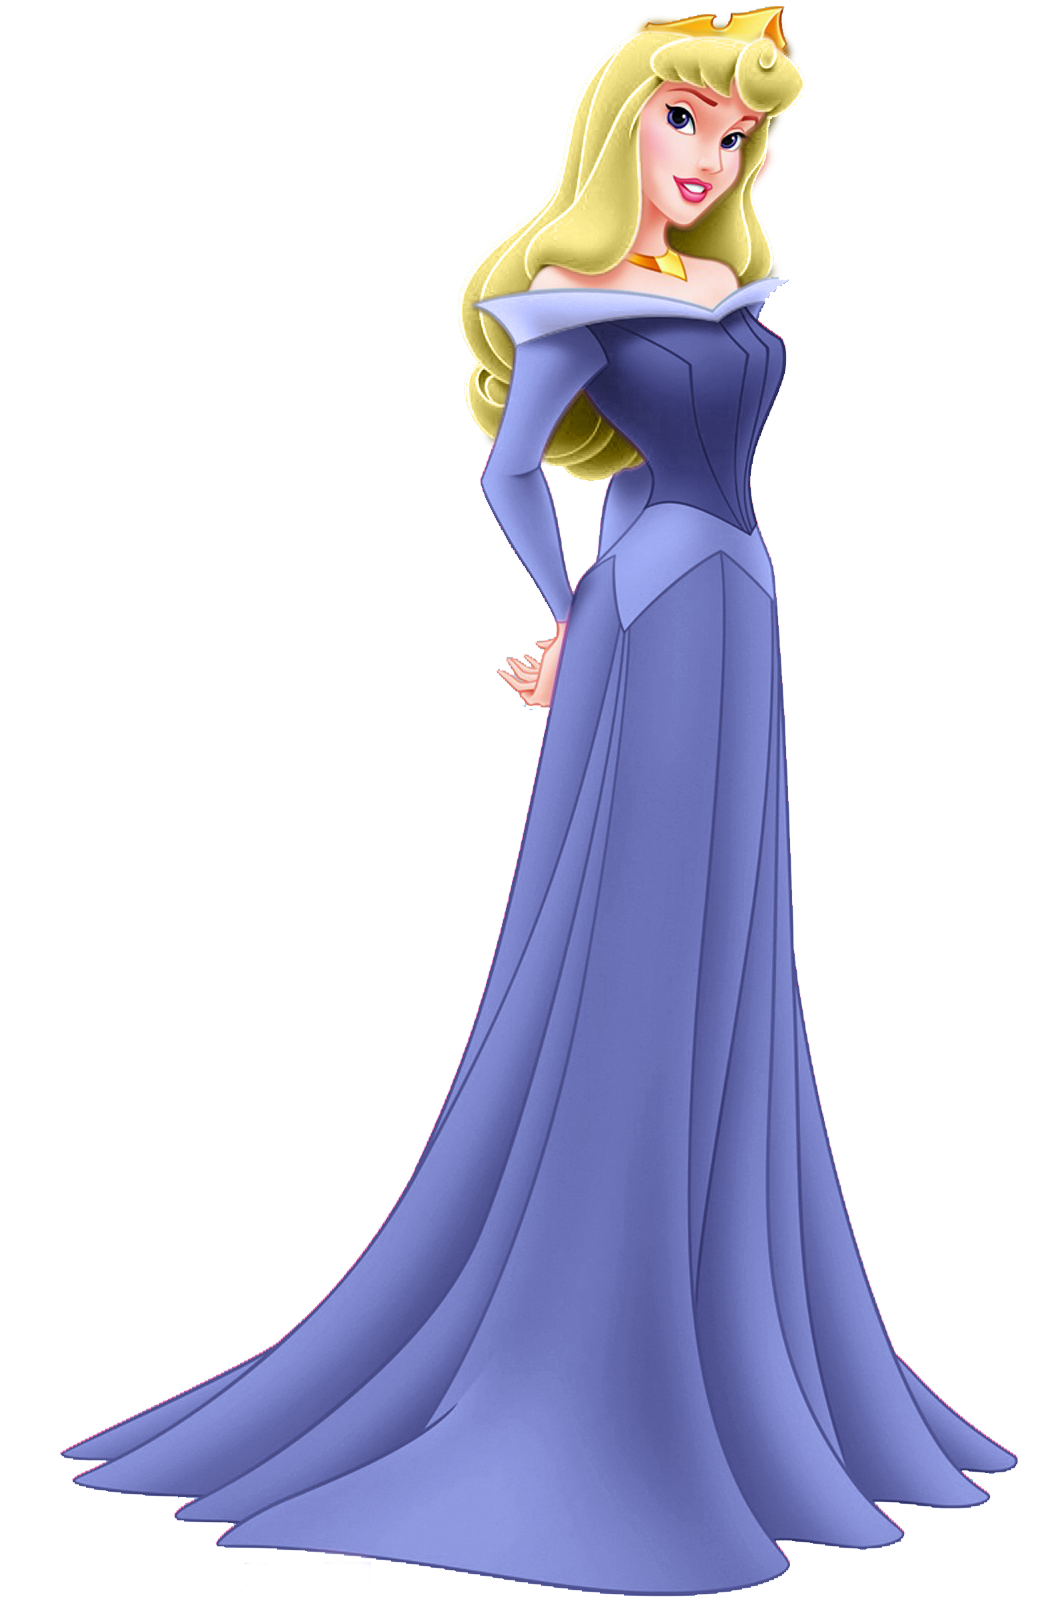 Um desenho animado de uma princesa da princesa aurora da disney.